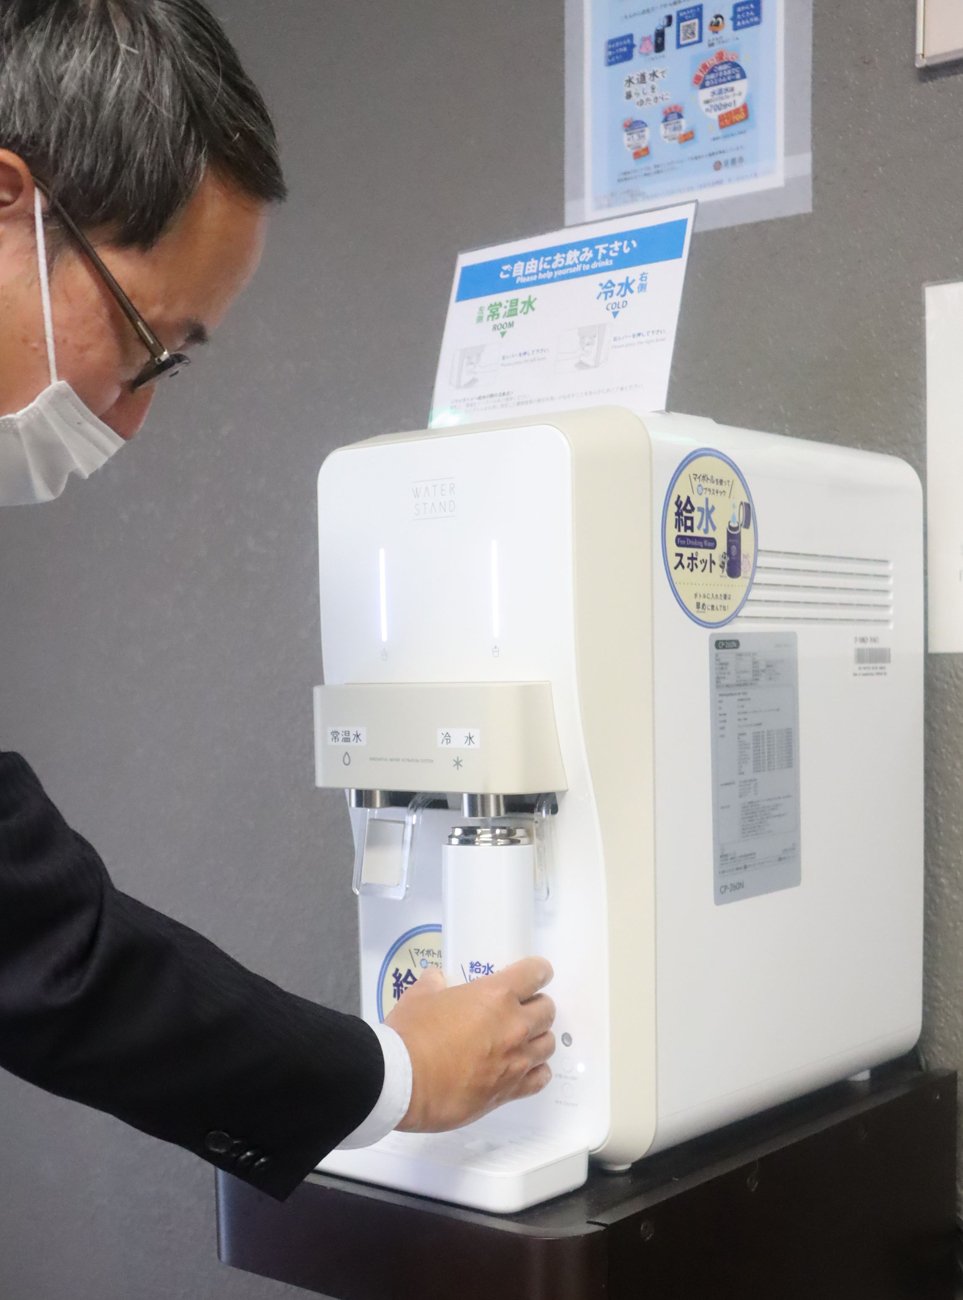 マイボトル利用促進へ広がる給水機　京都市が公共施設で設置進める